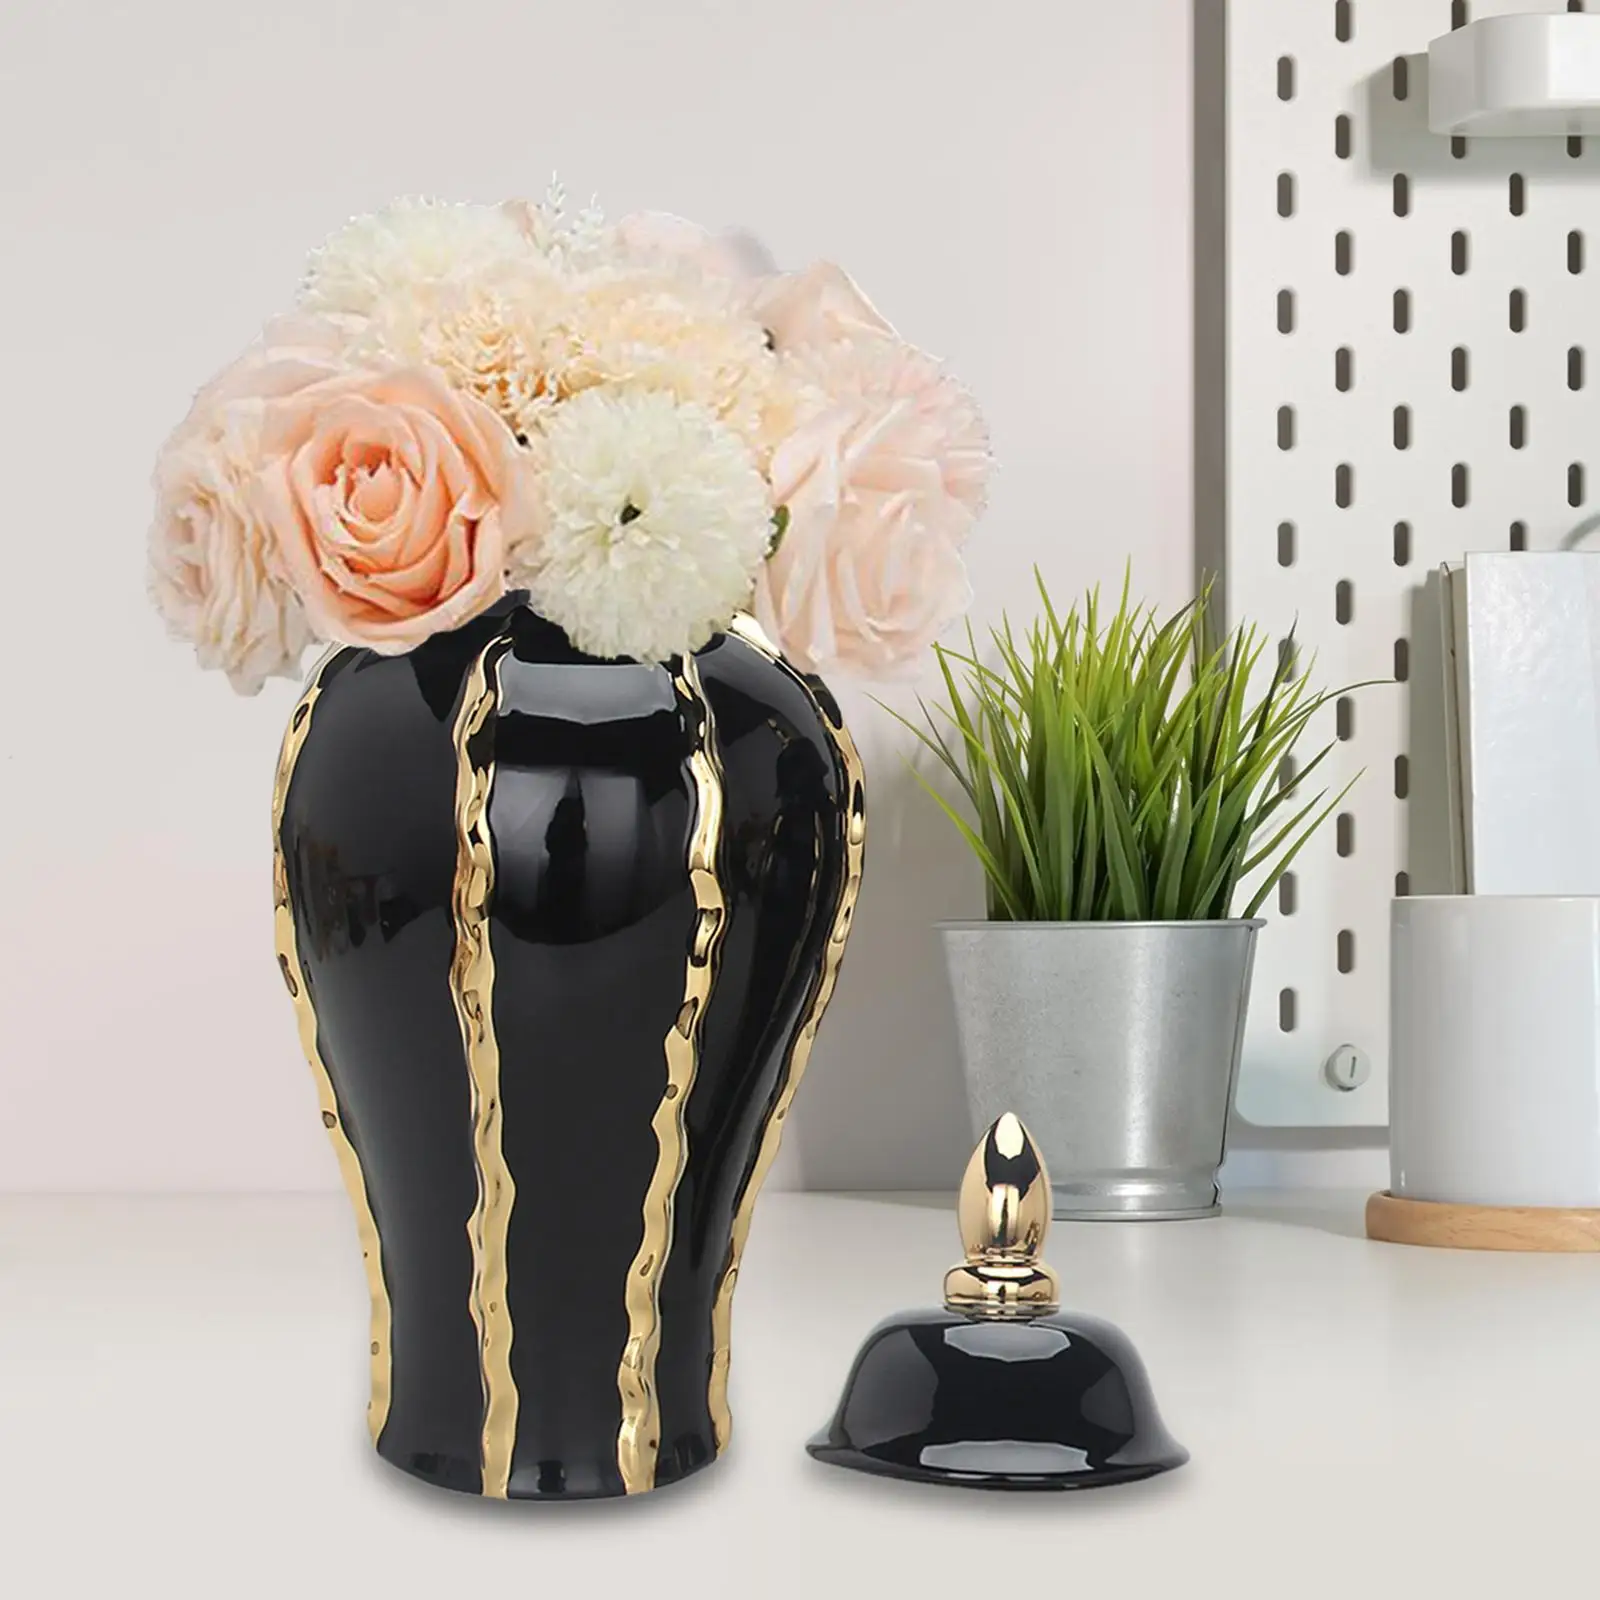 Porcelain Ginger Jar Table Centerpiece Ornament Floral Arrangement Ceramic Vase for Bedroom Office Decoration Collection